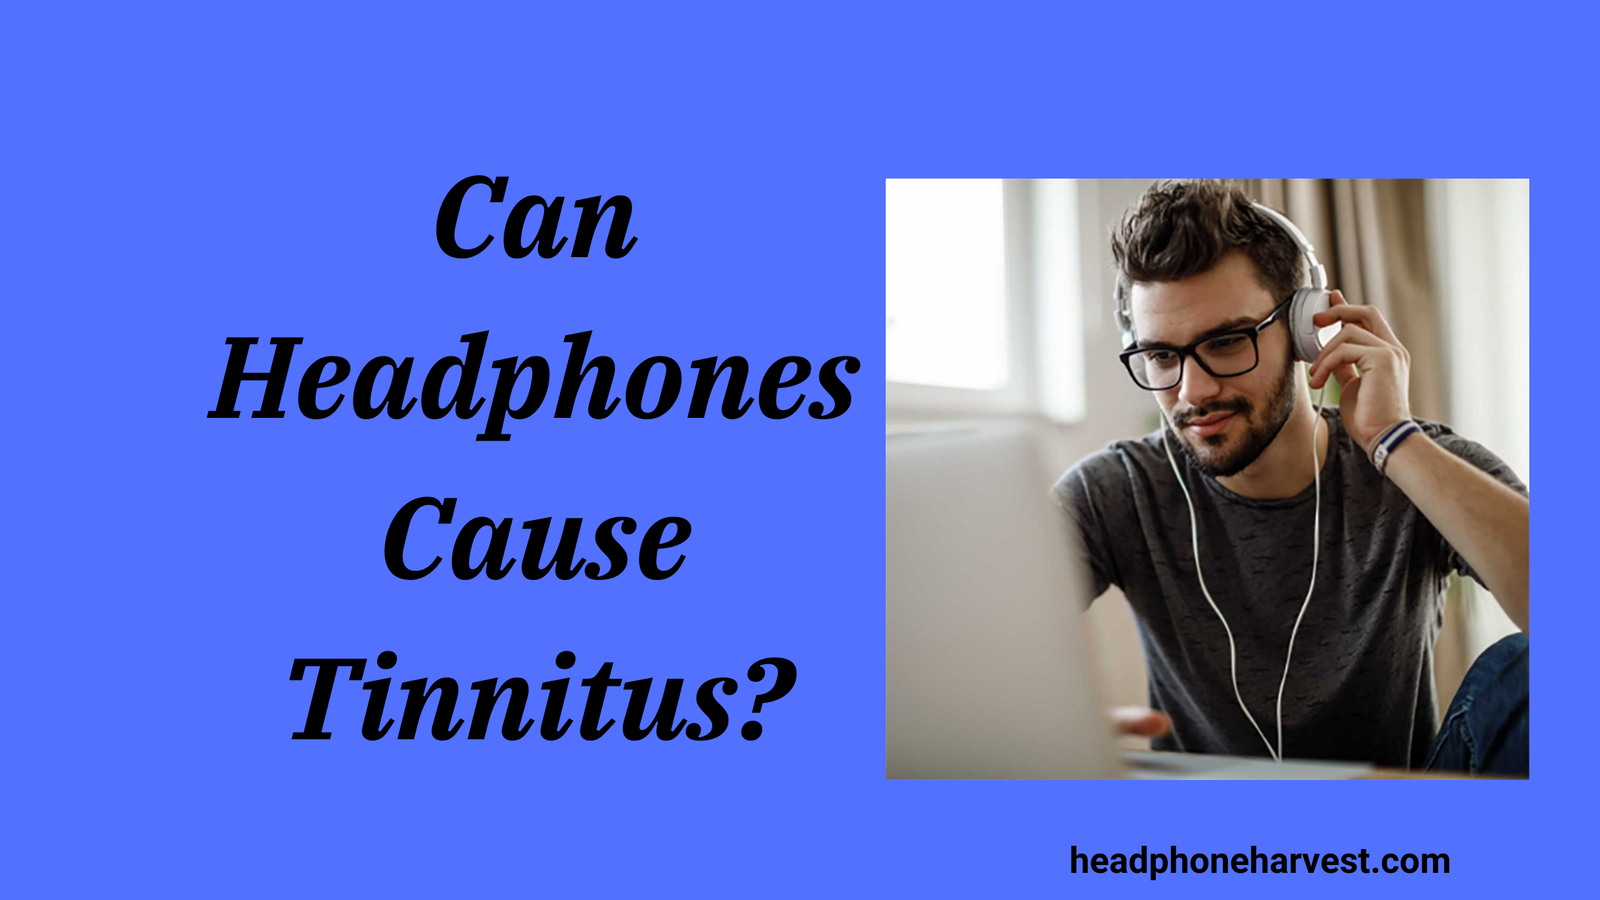 Can Headphones Cause Tinnitus?